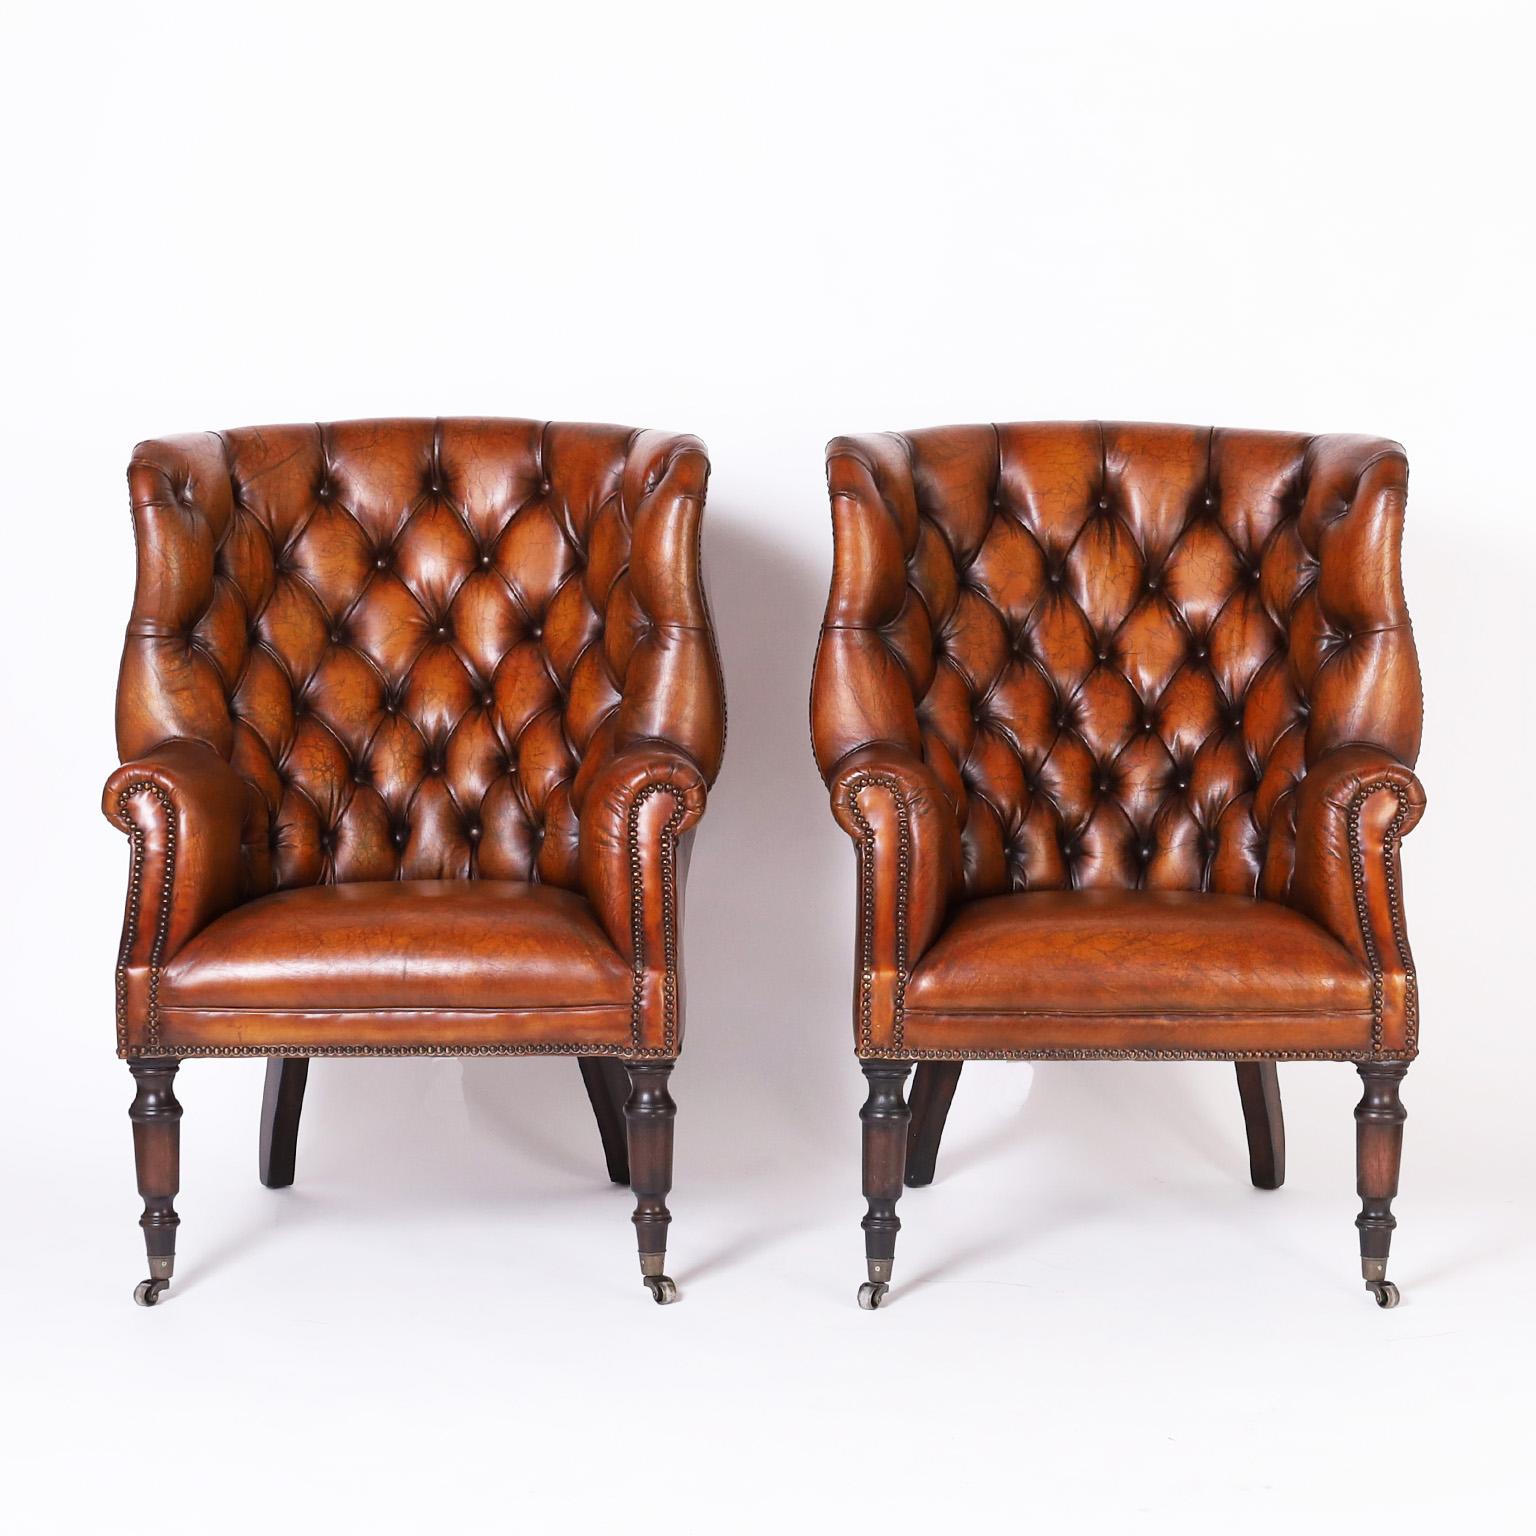 Belle paire de fauteuils à oreilles de style colonial britannique, tapissés de cuir brun luxueux, de forme classique et élégante, avec dossiers à boutons, clous en laiton et pieds tournés sur roulettes en métal.